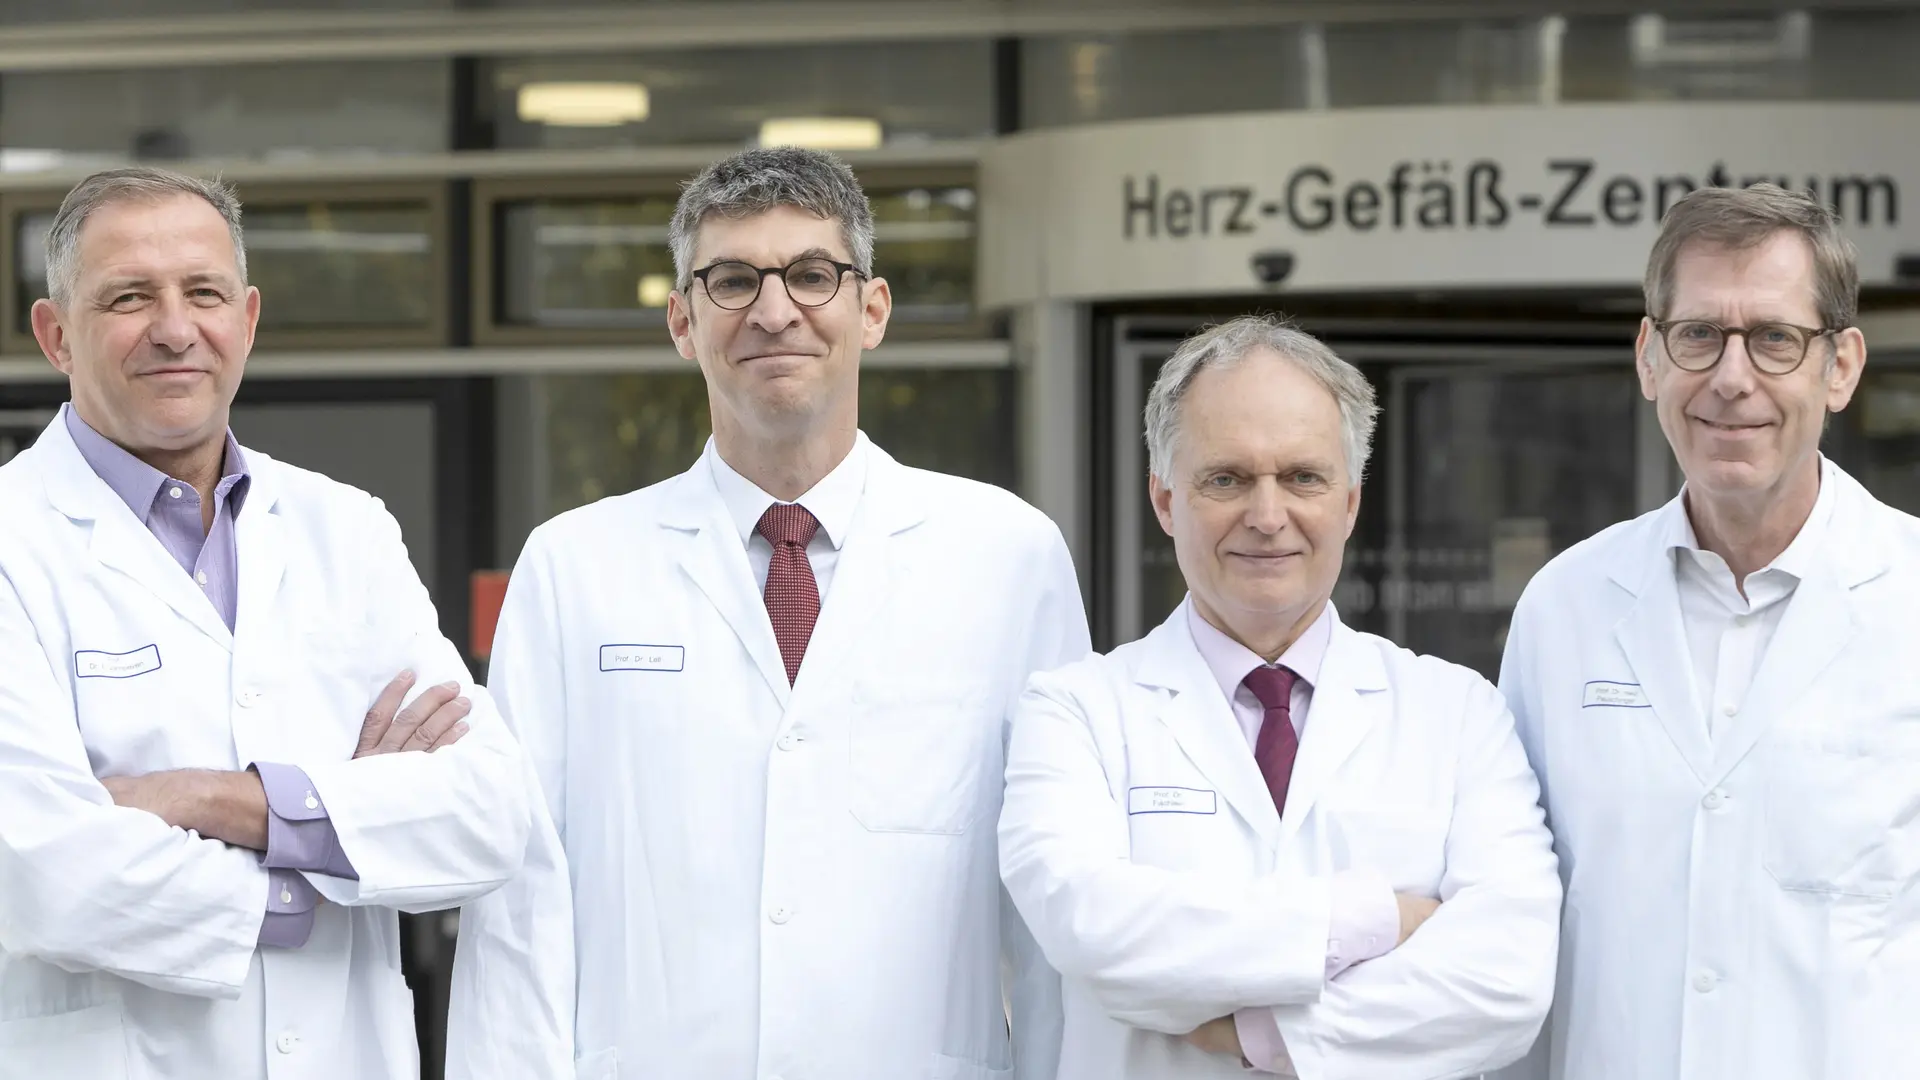 Die 4 Chefärzte vor dem Eingang des Herz-Gefäß-Zentrums: Prof. Verhoeven, Prof. Lell, Prof. Fischlein, Prof. Pauschinger